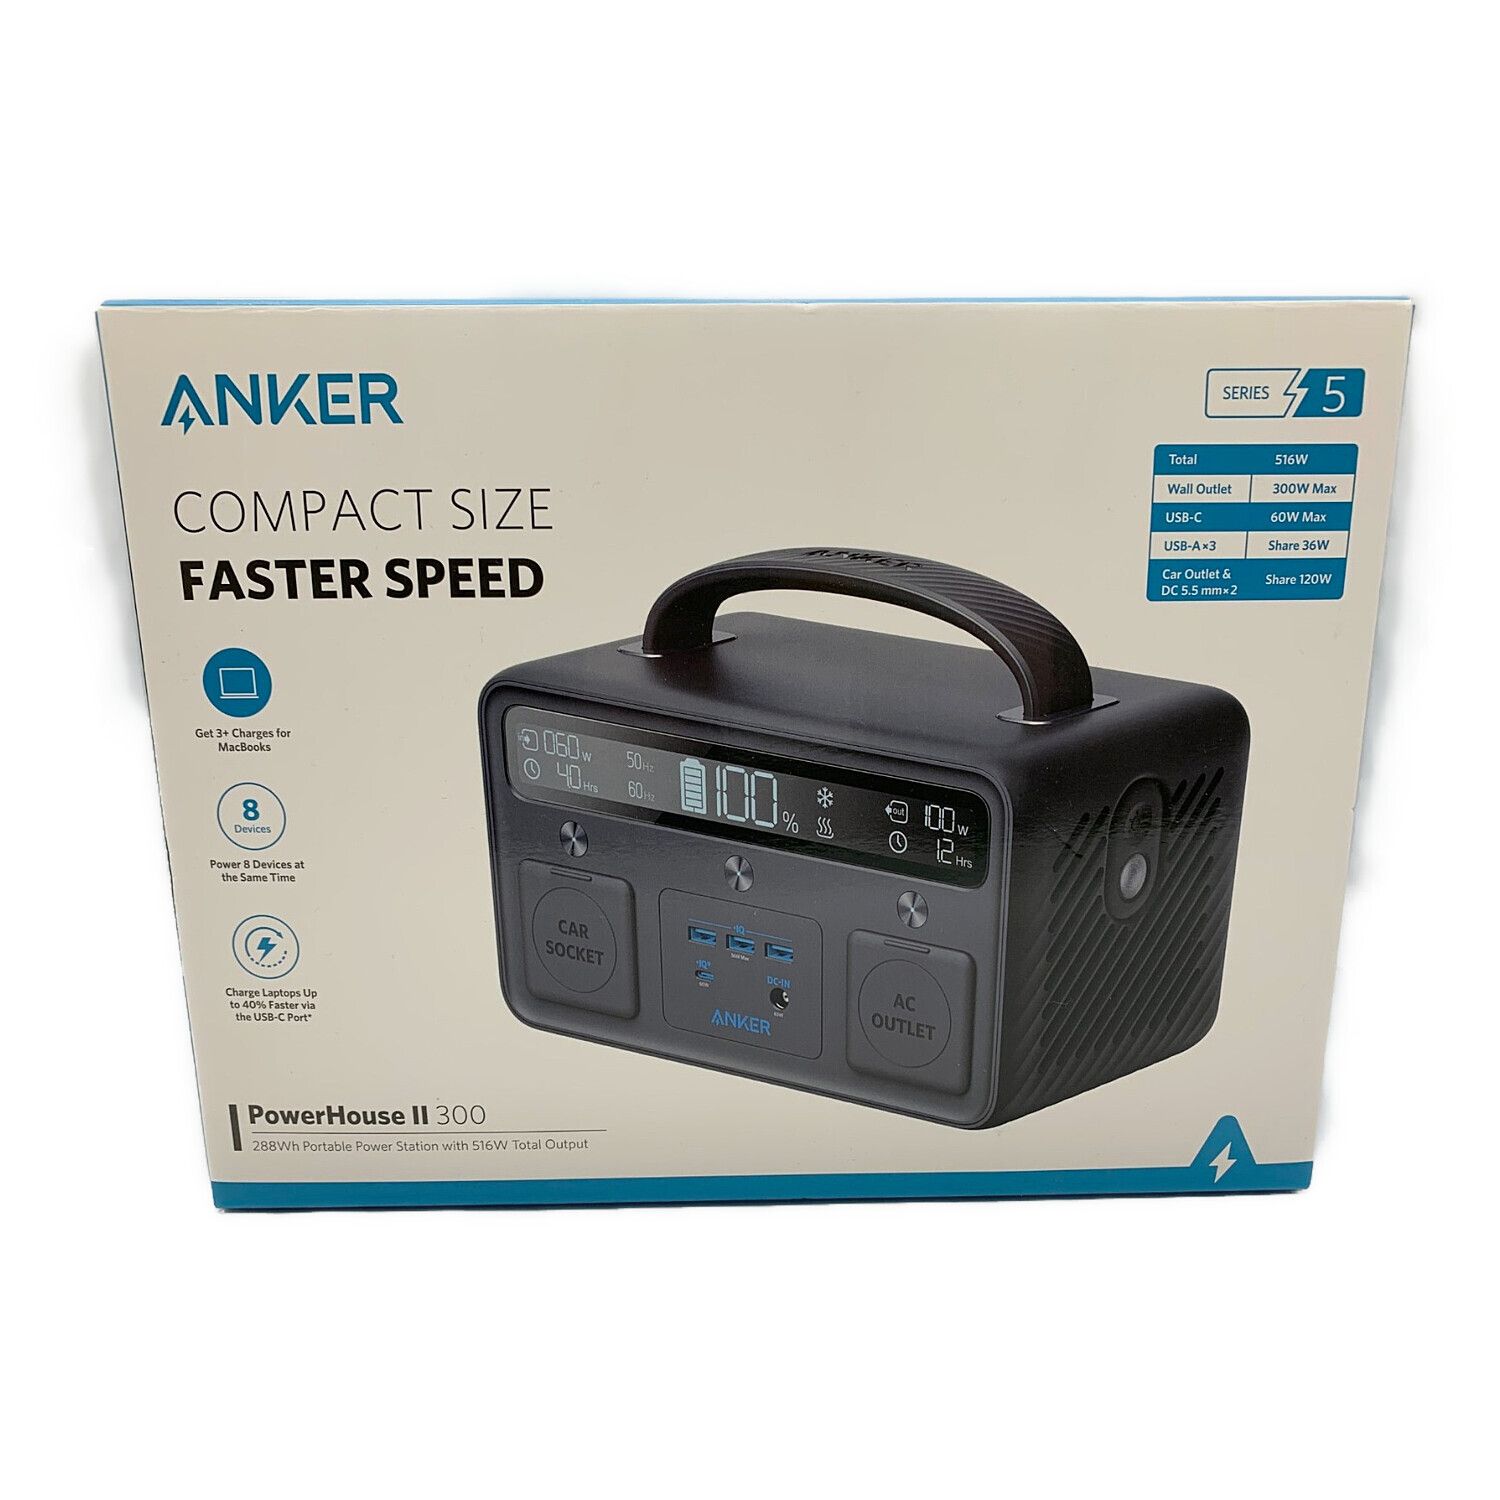 Anker PowerHouse II 300 ポータブル電源 - ライト/ランタン